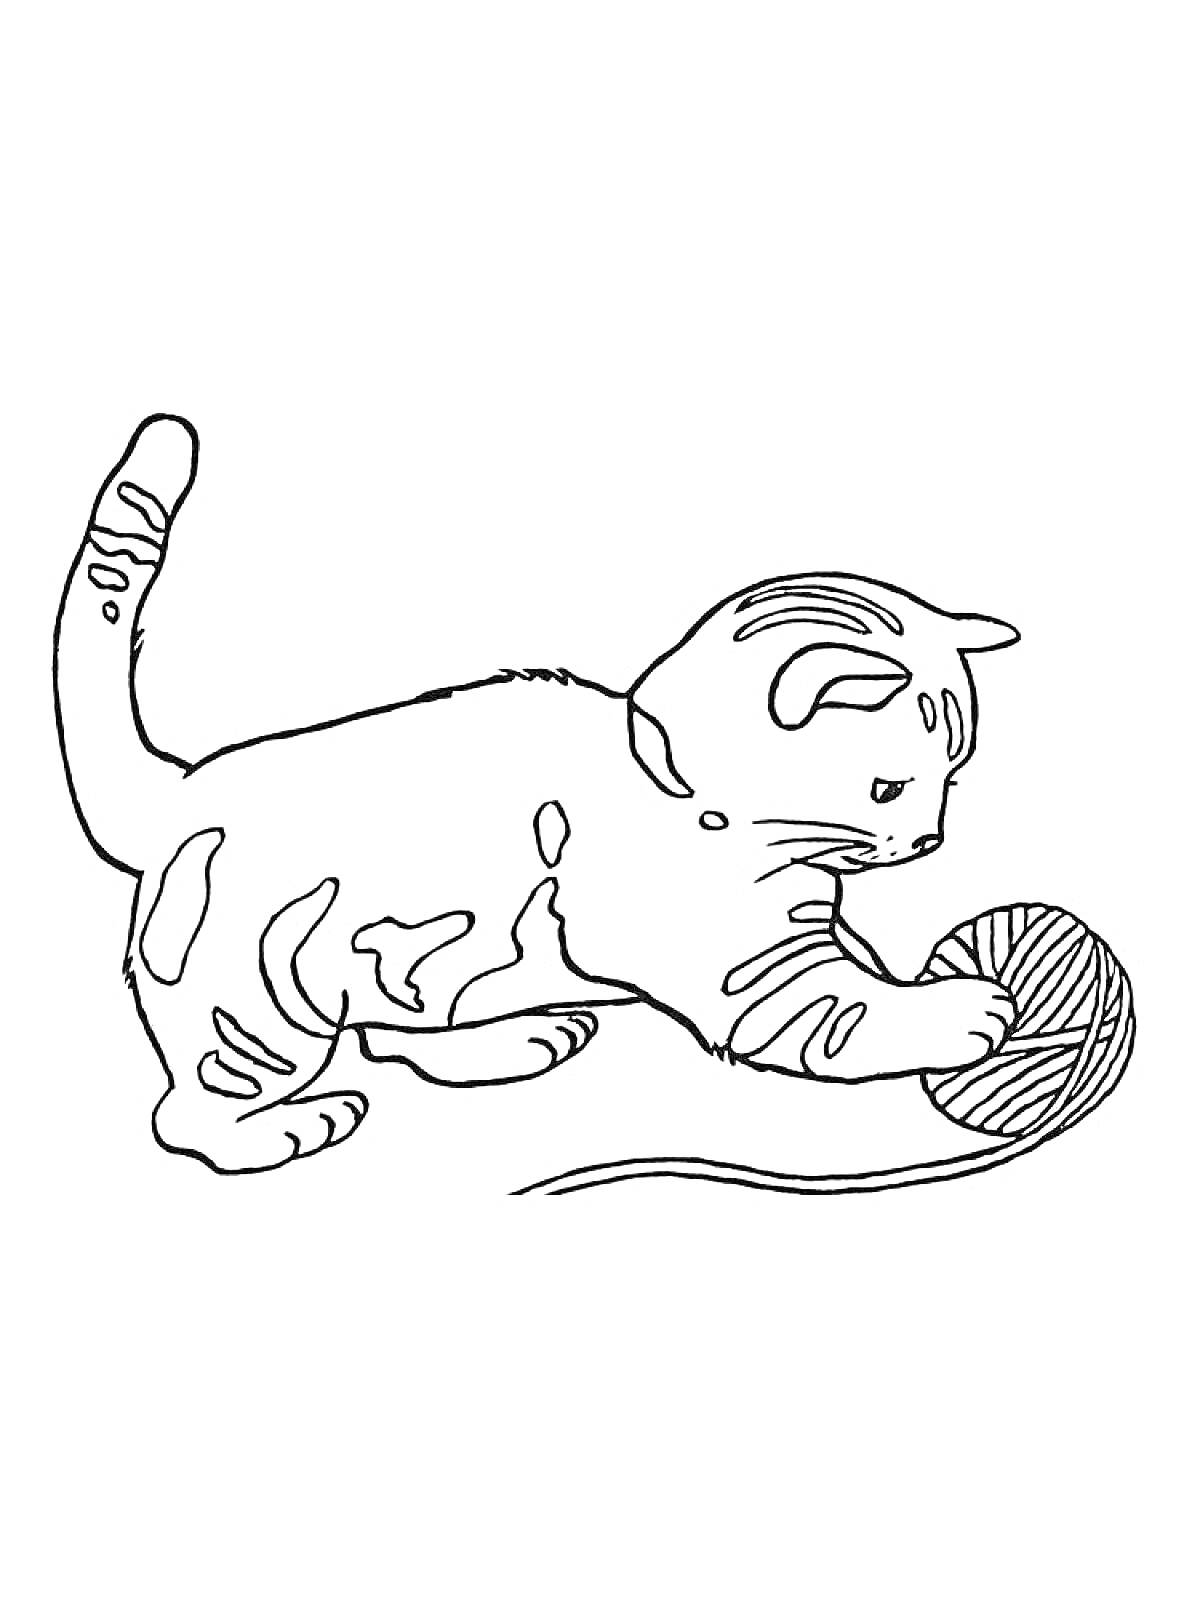 Котёнок играет с клубком ниток